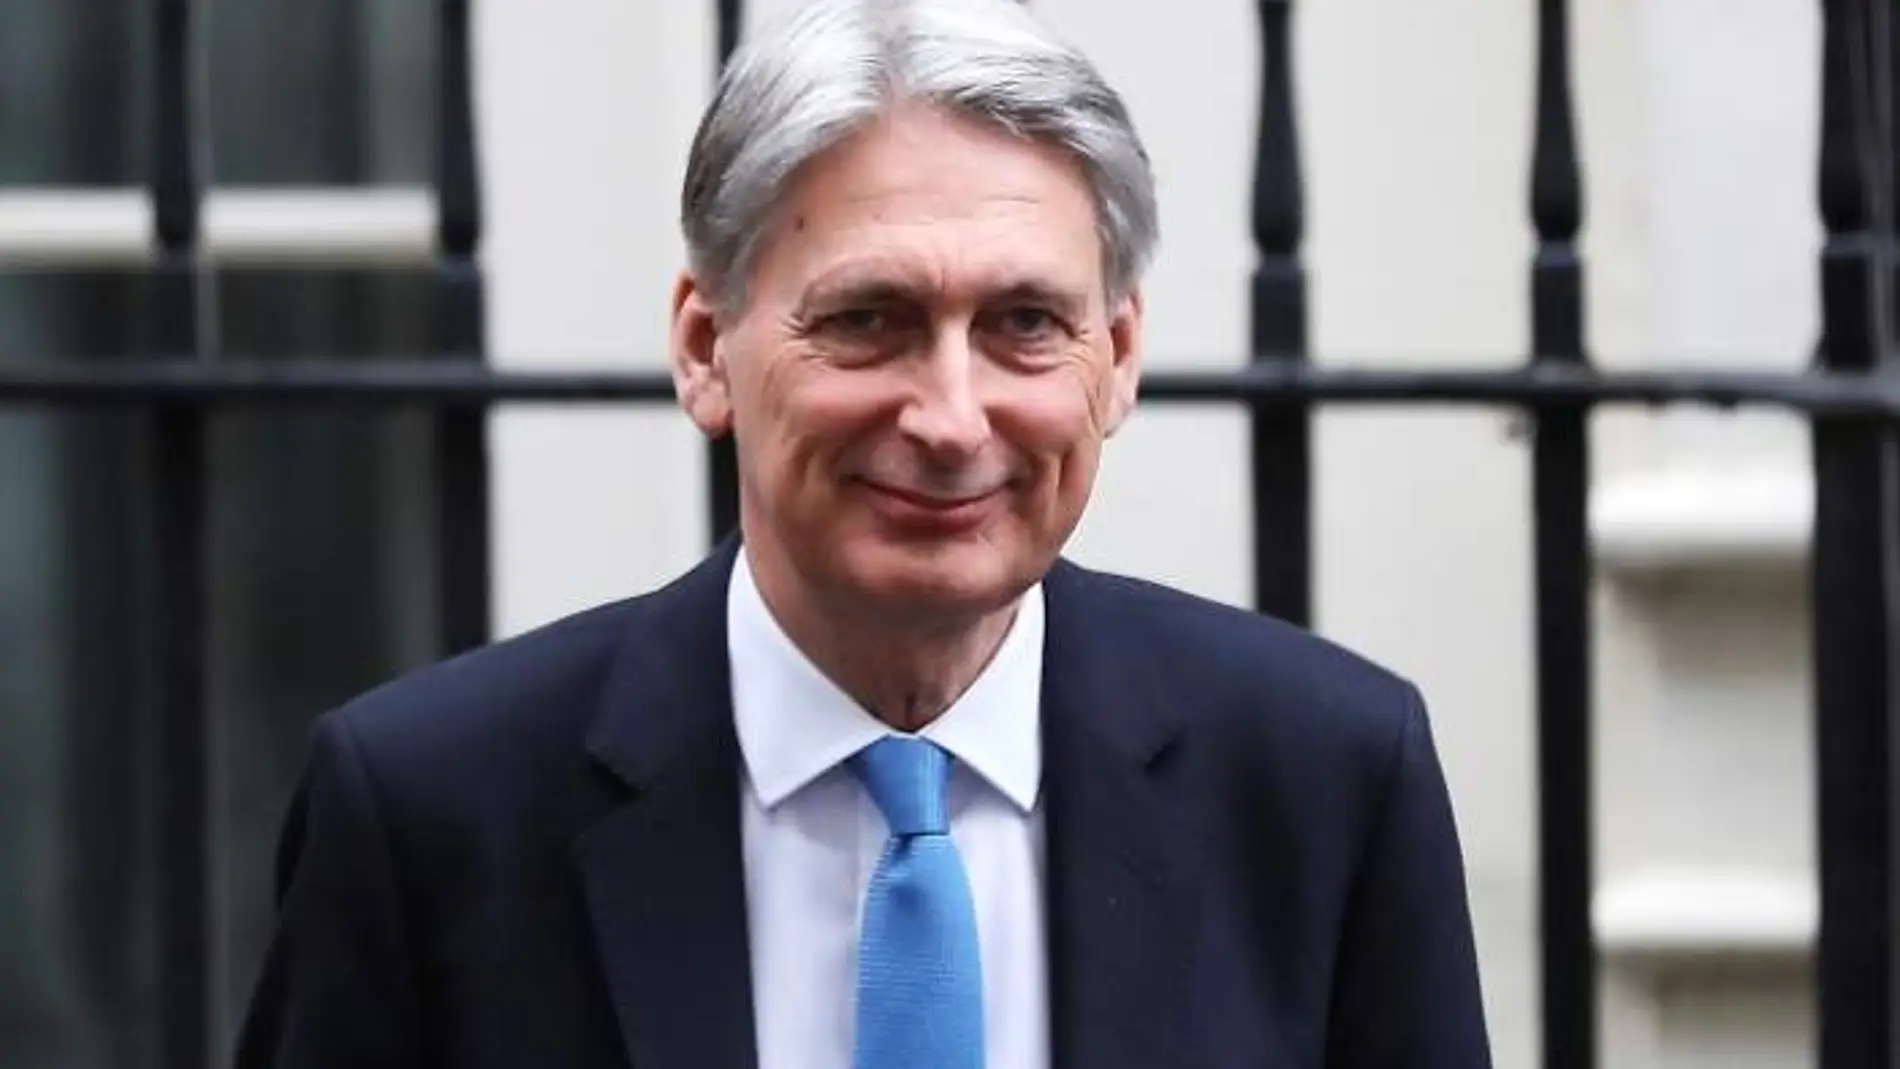 El ministro británico de Finanzas, Philip Hammond, en una imagen de archivo / Reuters